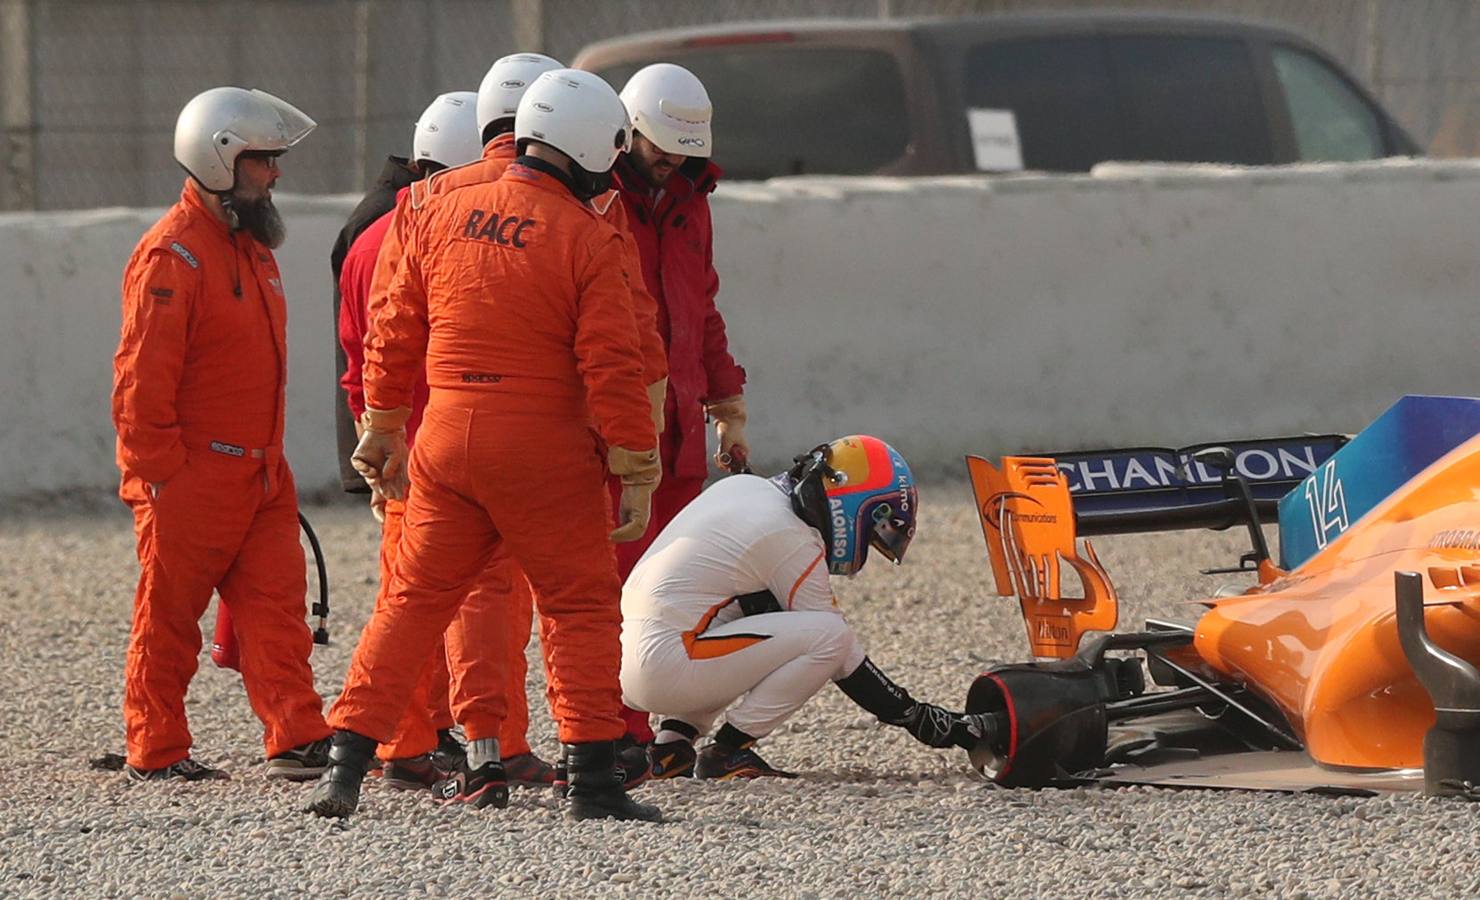 Fernando Alonso está probando su MCL33 en los primoers test de la temporada en el circuito de Montmeló.